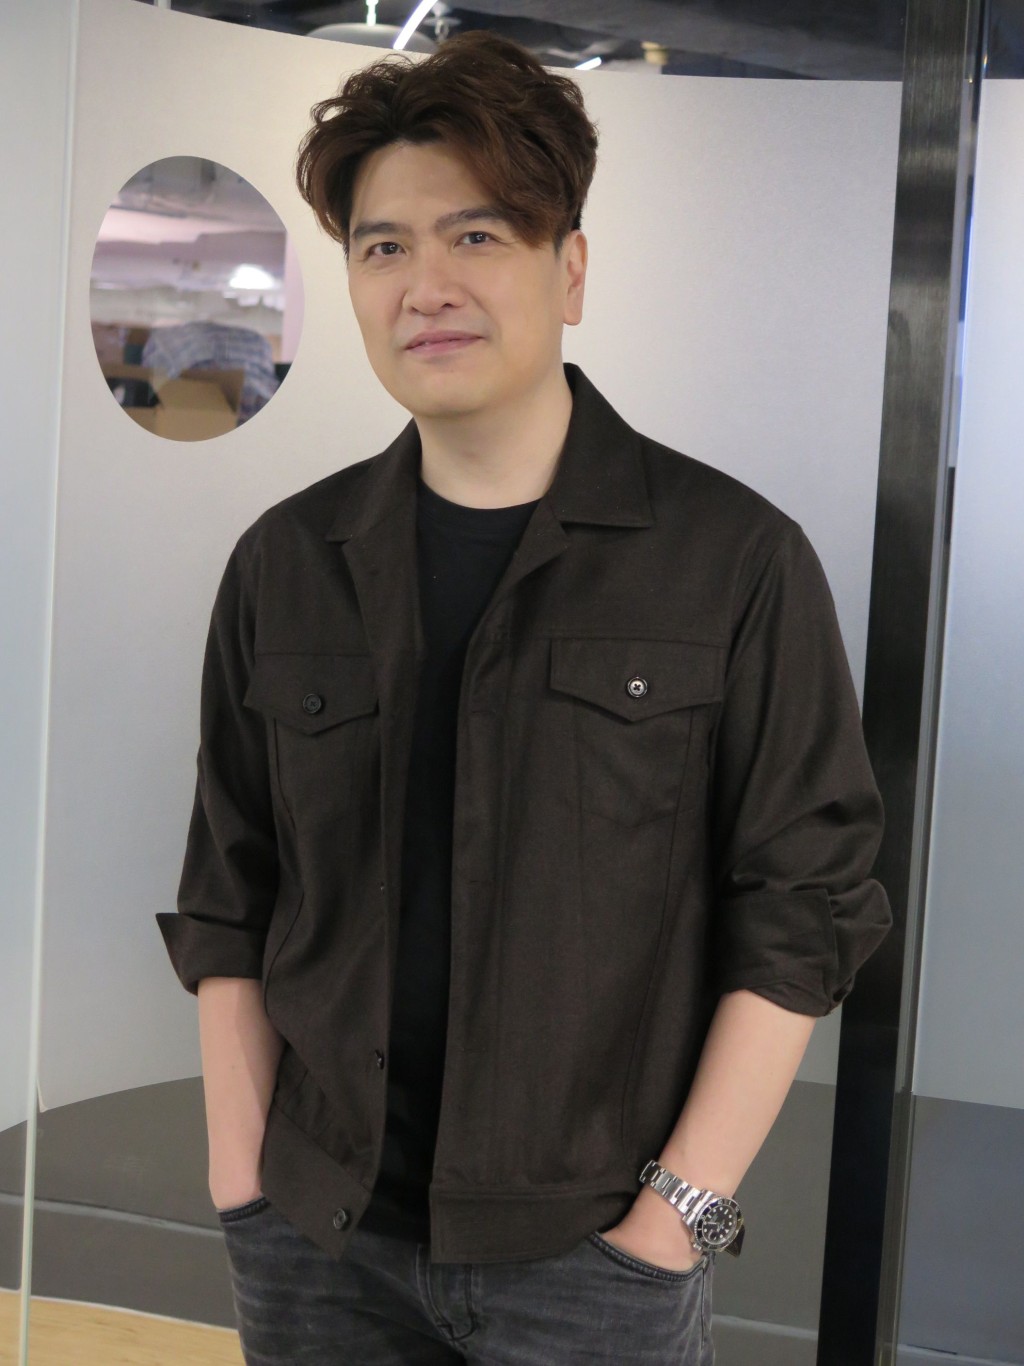 Sunny称短期内不会拍《导演·门3》，但可考虑其他电影岗位的节目。